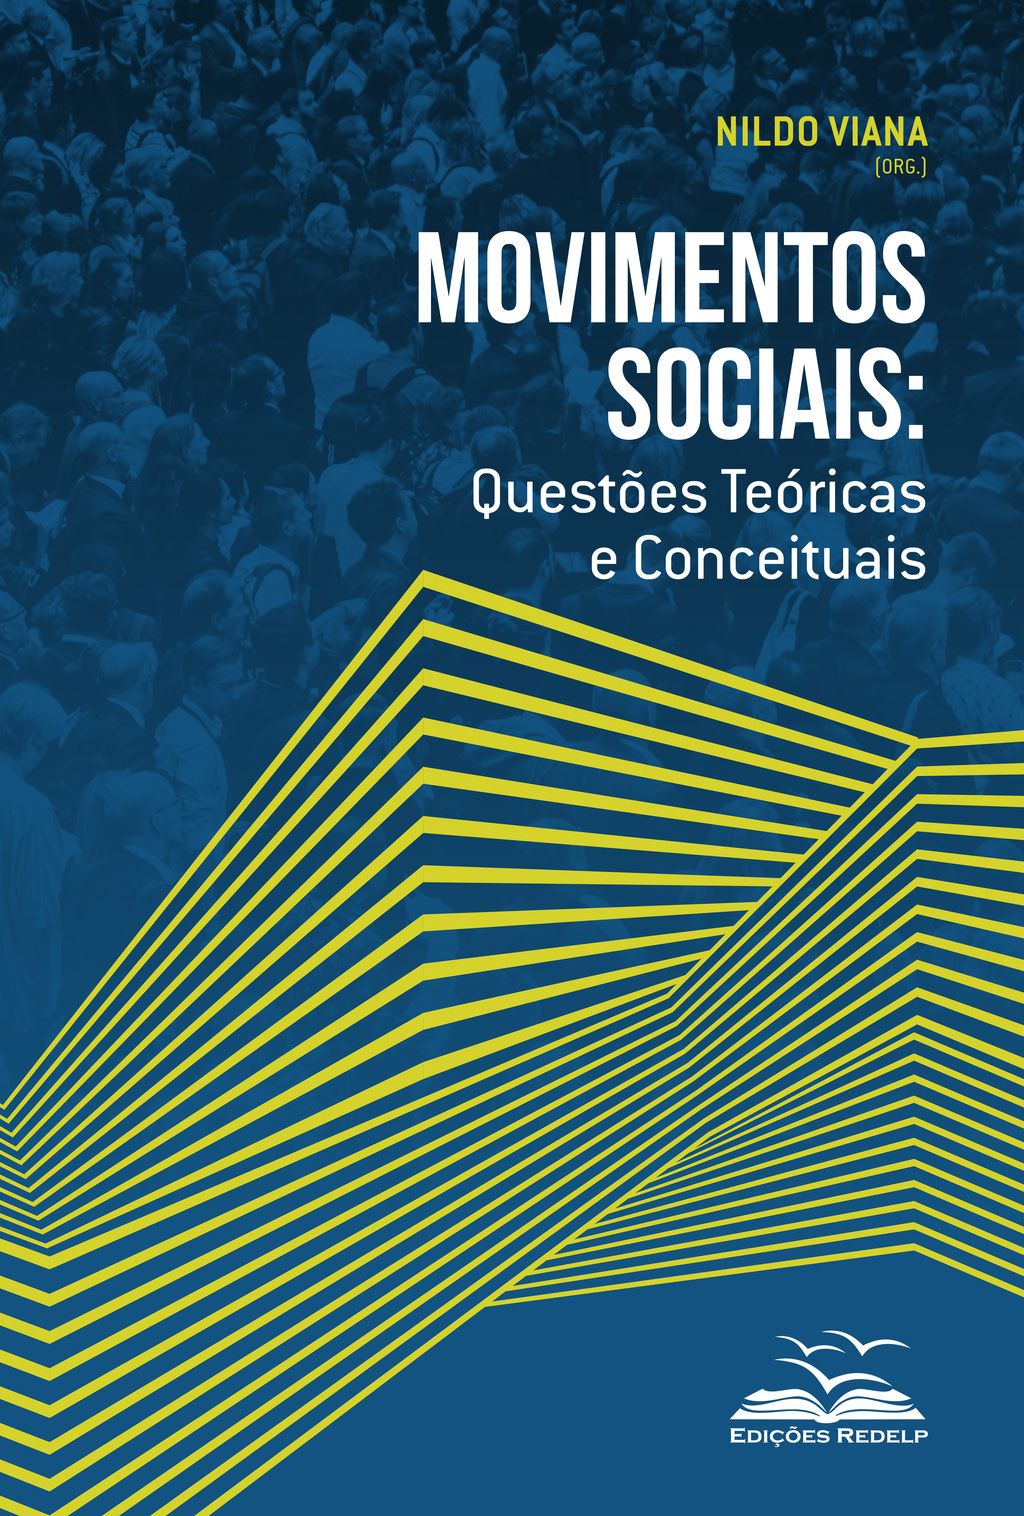 Geografia e movimentos sociais - livrariaunesp